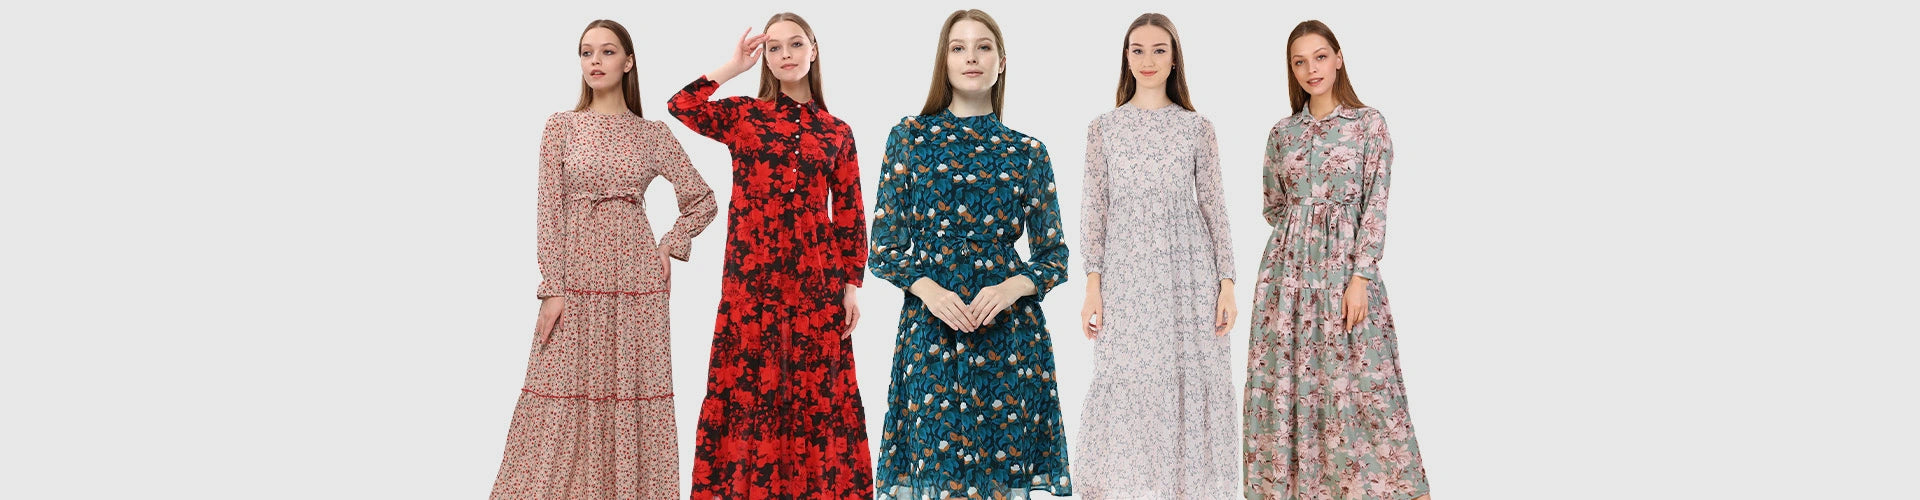 floral dresses online uk